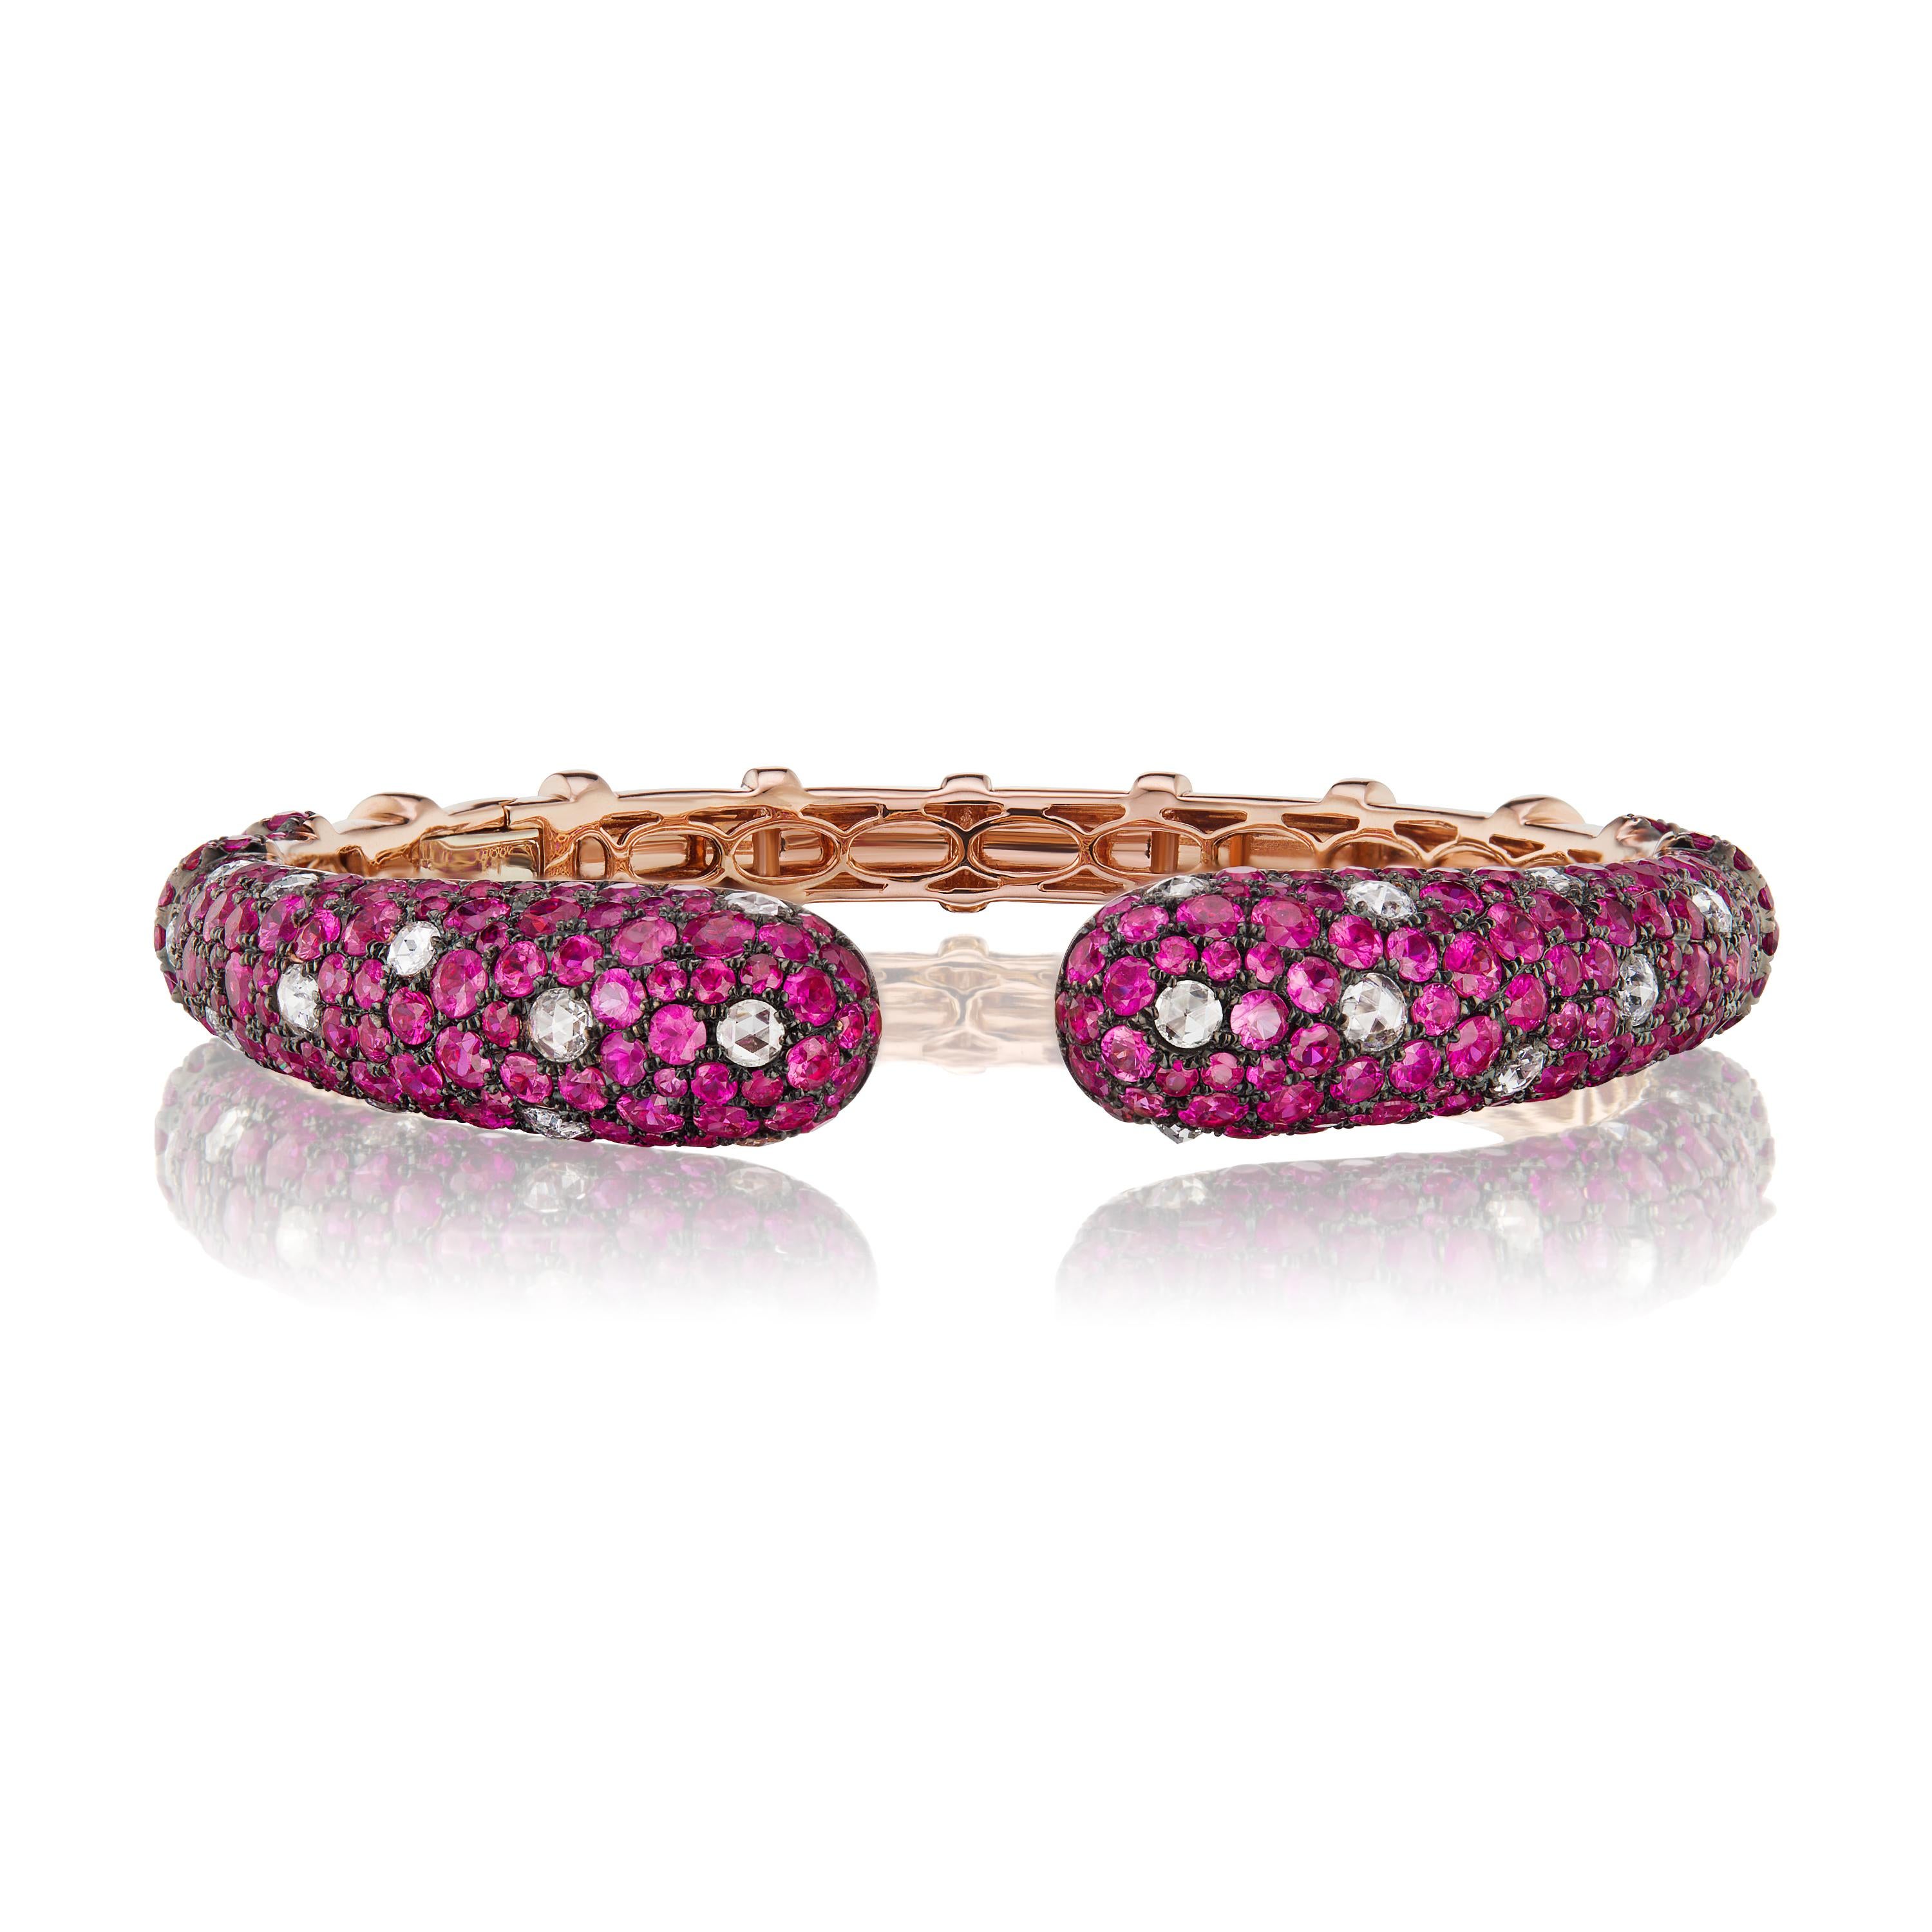 Le bracelet Ruby a un aspect immaculé, réalisé avec un rubis de 12,81 carats et des diamants ronds de 1,45 carat sur de l'or rose 18 carats par Nigaam. Le bracelet est orné de rubis ronds et de diamants sertis à la main. Les diamants sont de couleur